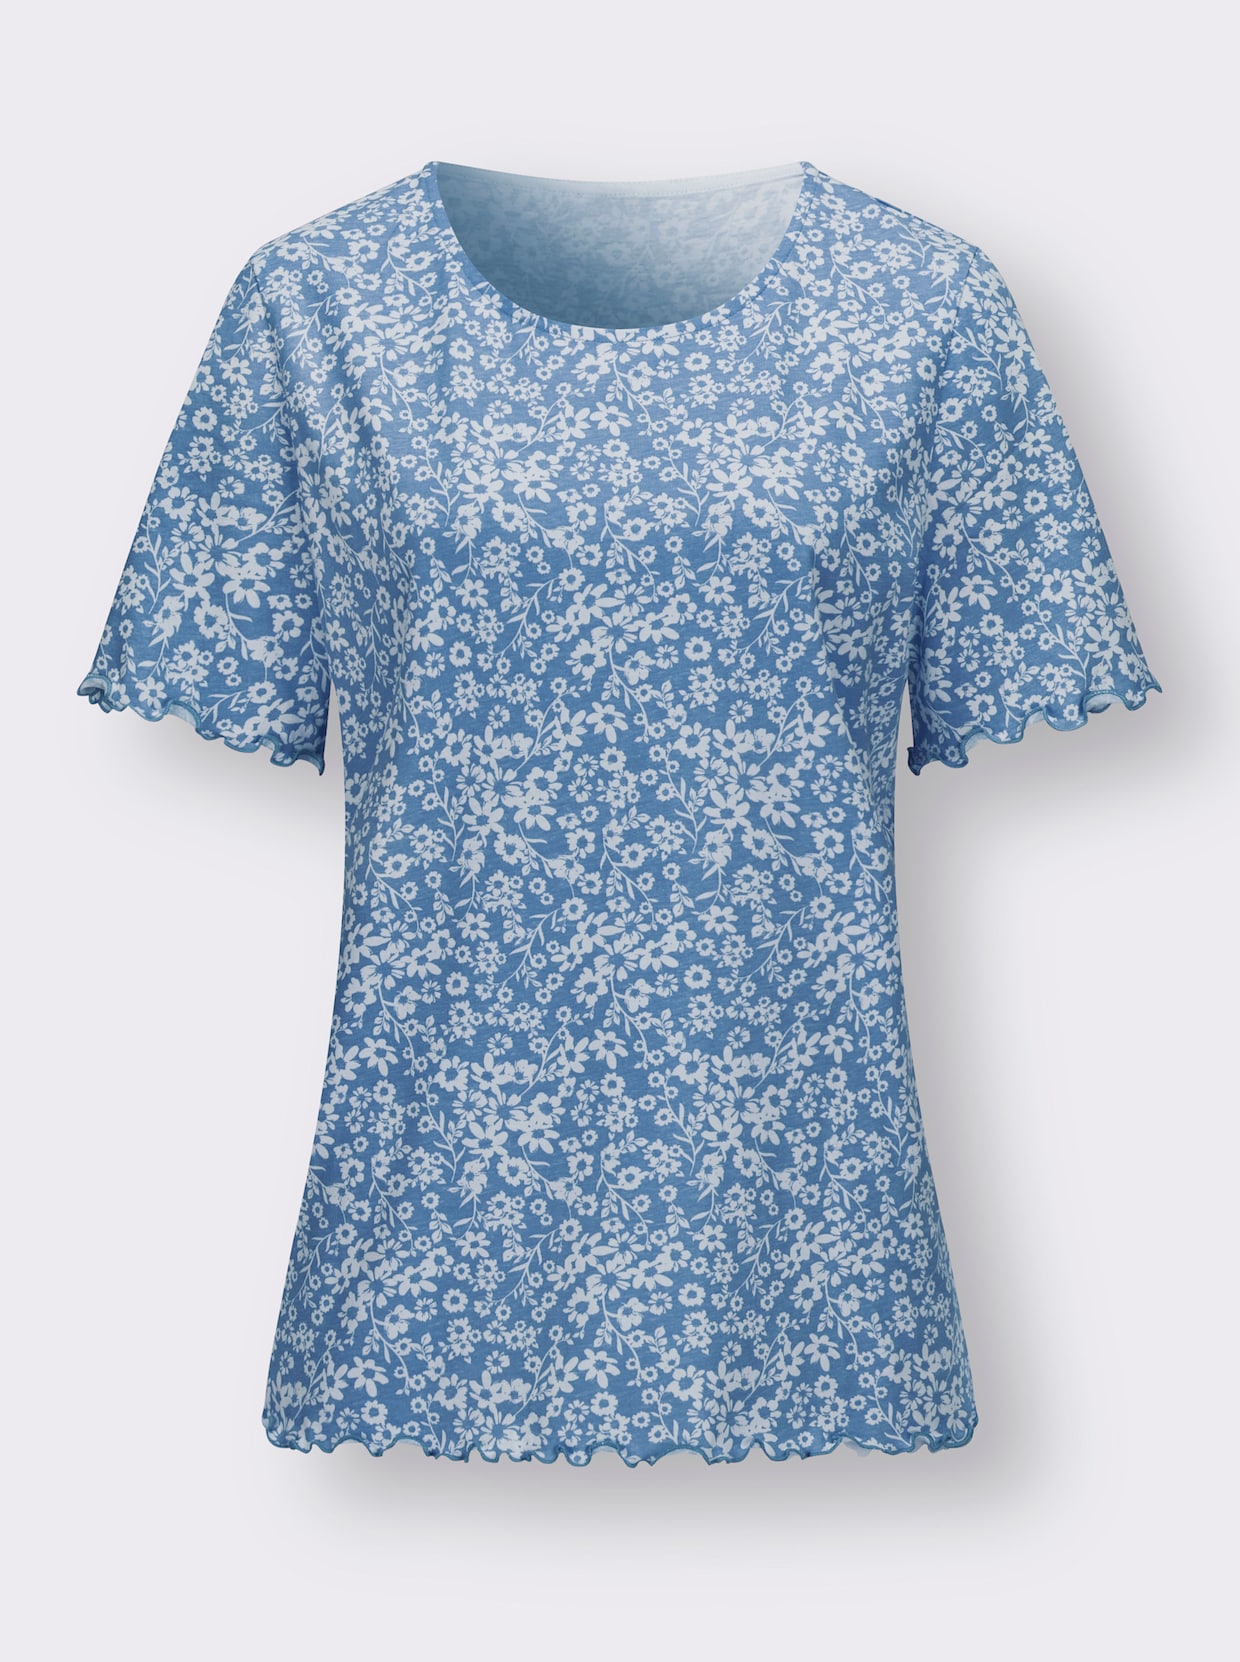 Tričko s krátkým rukávem - střední modrá-ecru-potisk